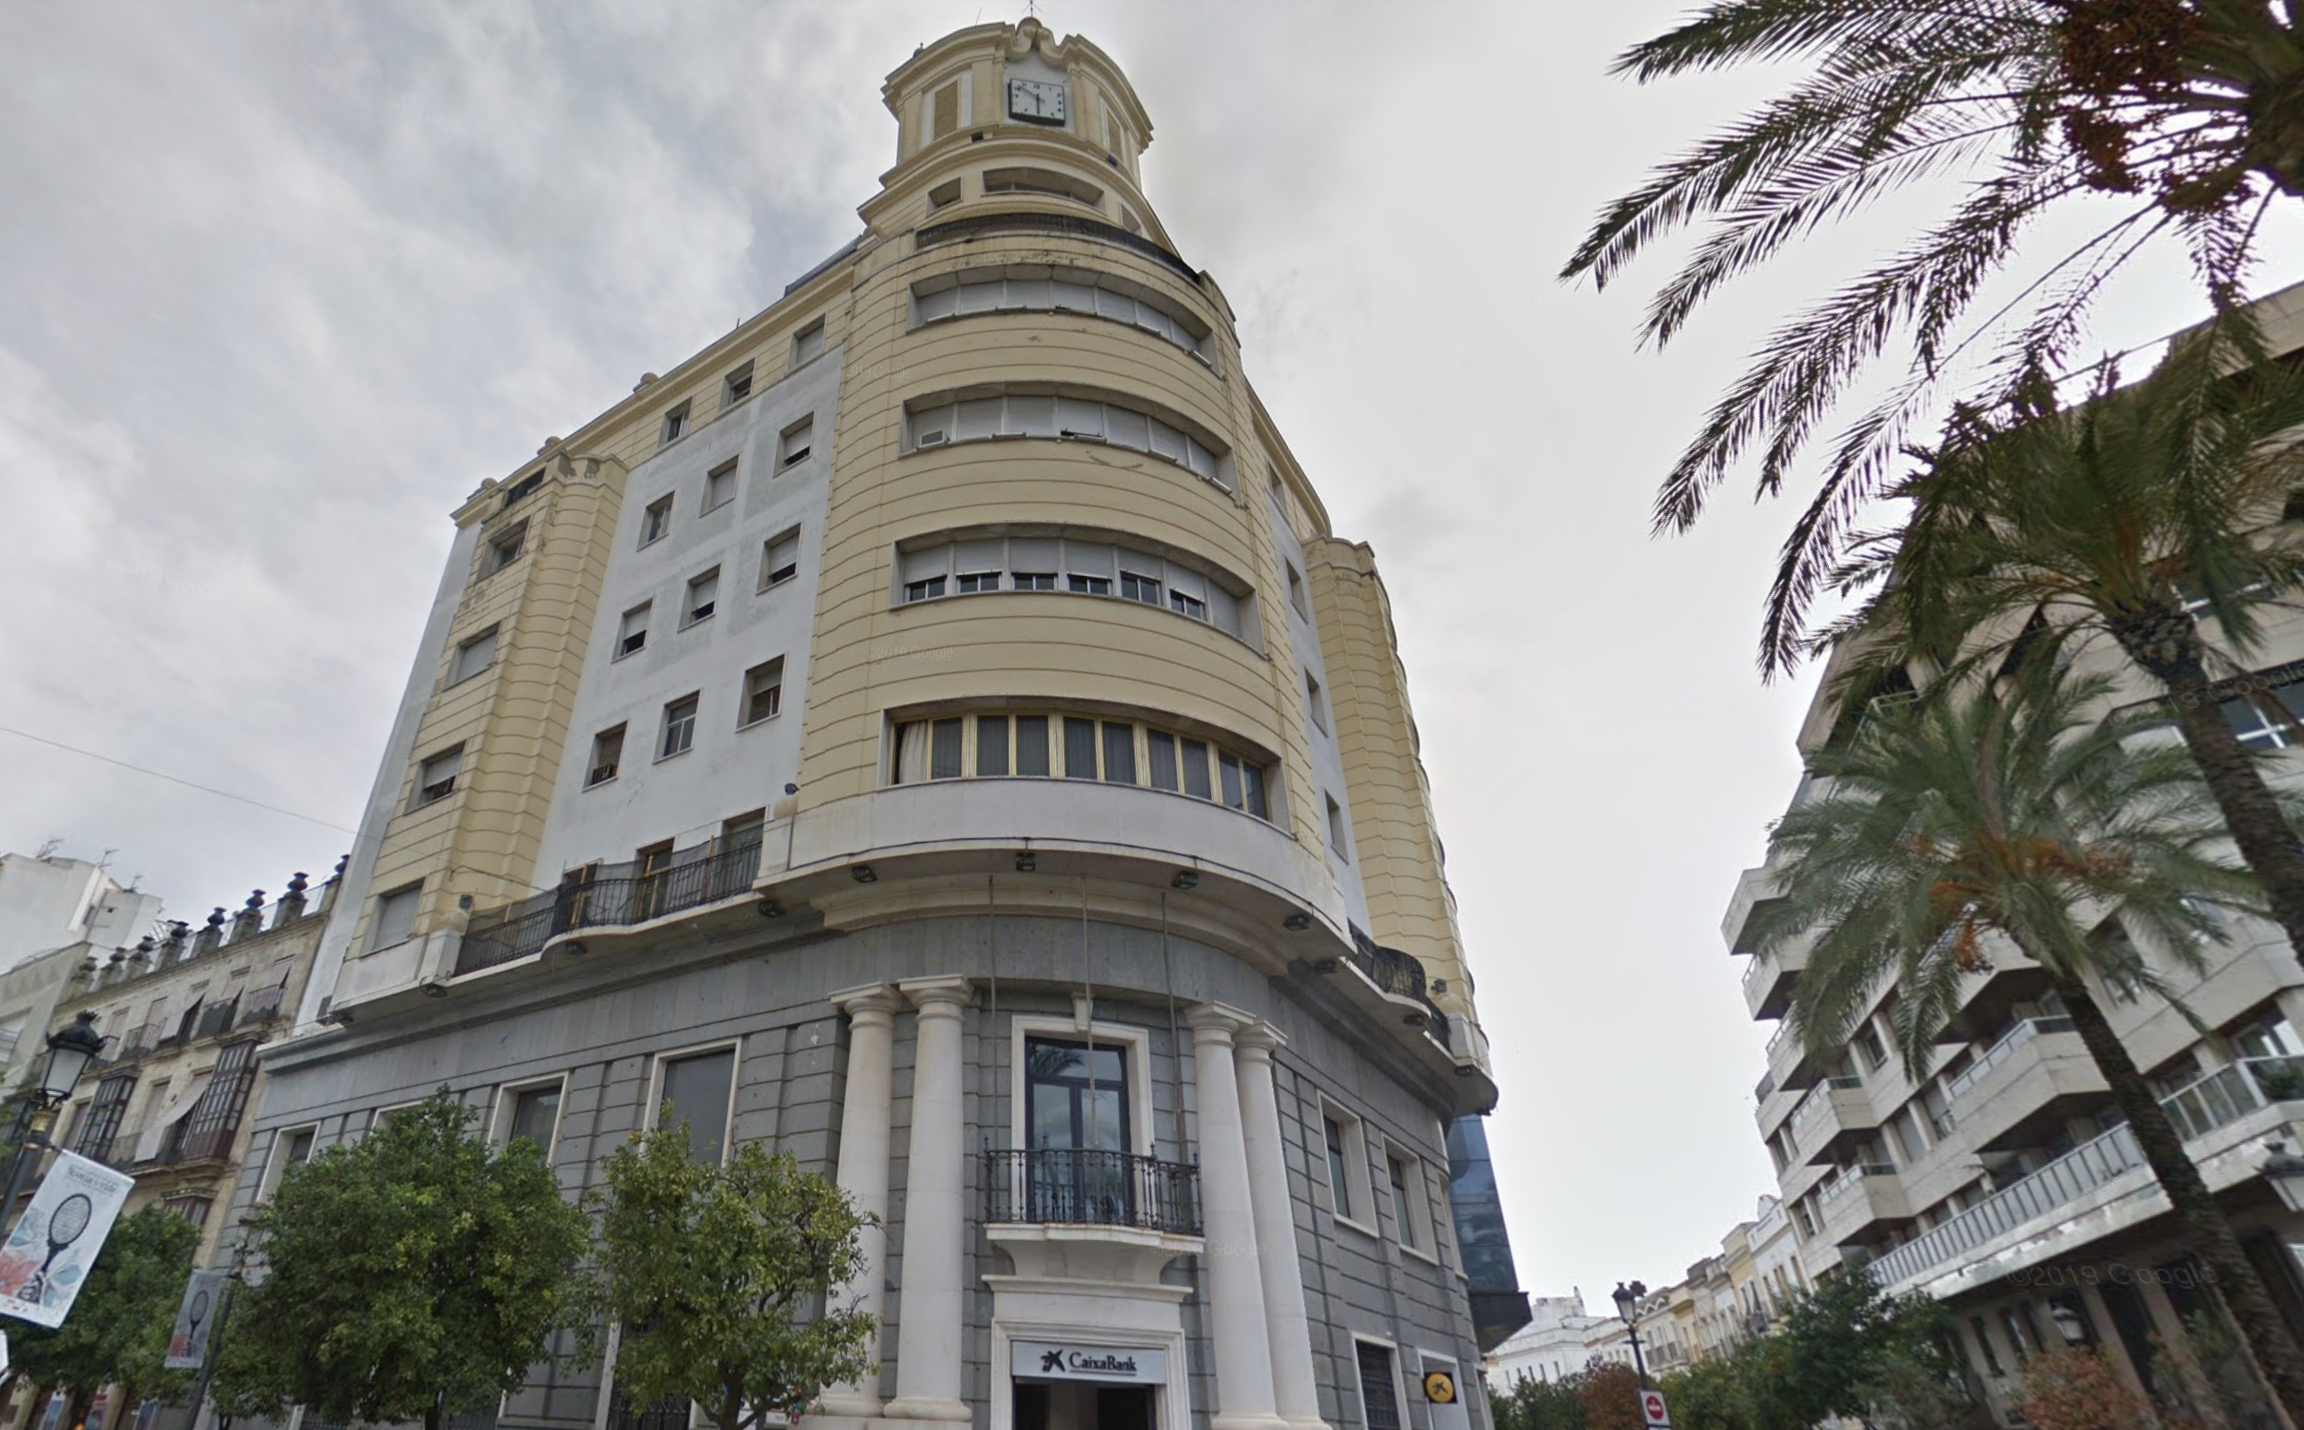 El emblemático edificio del Arenal, antigua sede de la Caja, hoy propiedad de Caixabank, en una imagen de Google Maps.